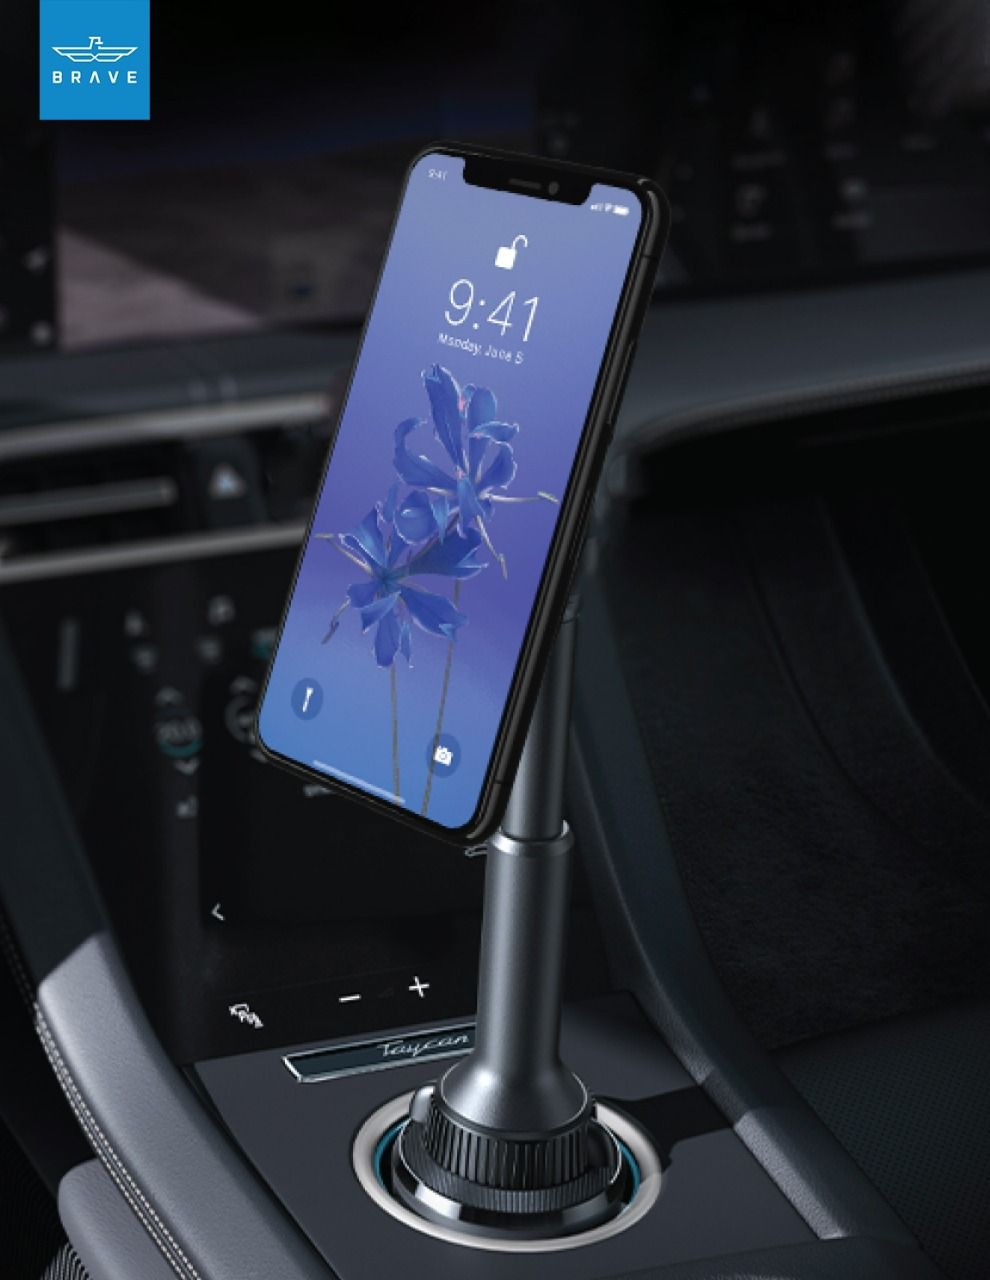 حامل جوال للسيارة مغناطيسي في قاعدة الأكواب 360 درجة مضاد للانزلاق بريف Brave ِِِAnti Slip 360D/r  Car Cup Holder Phone Mount Magnetic - 6}